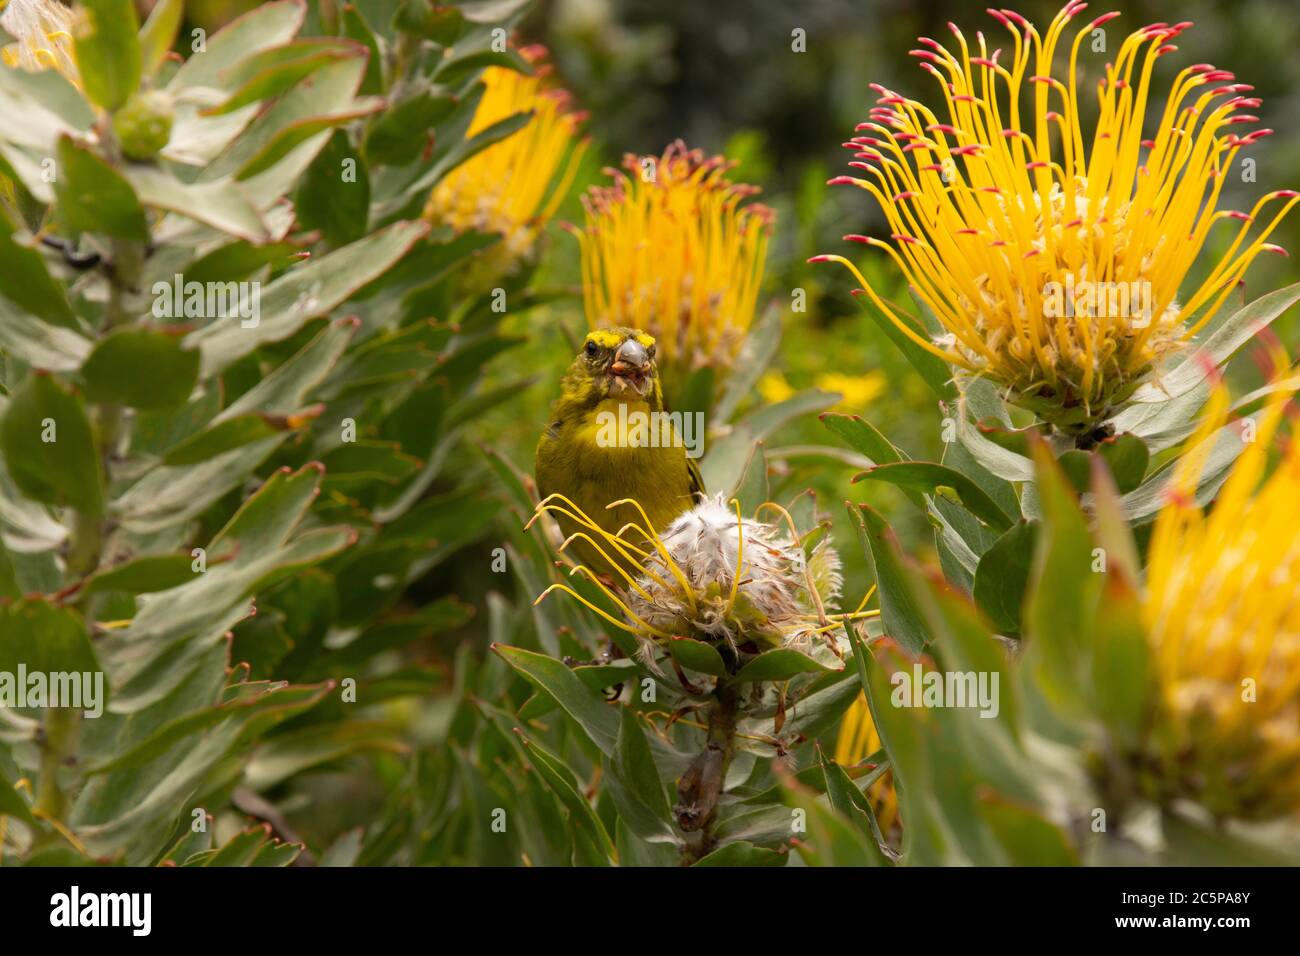 Ein Brimstone Canary frisst Samen unter Nadelkissen Proteas in Cape Town Botanical Gardens, Südafrika Stockfoto